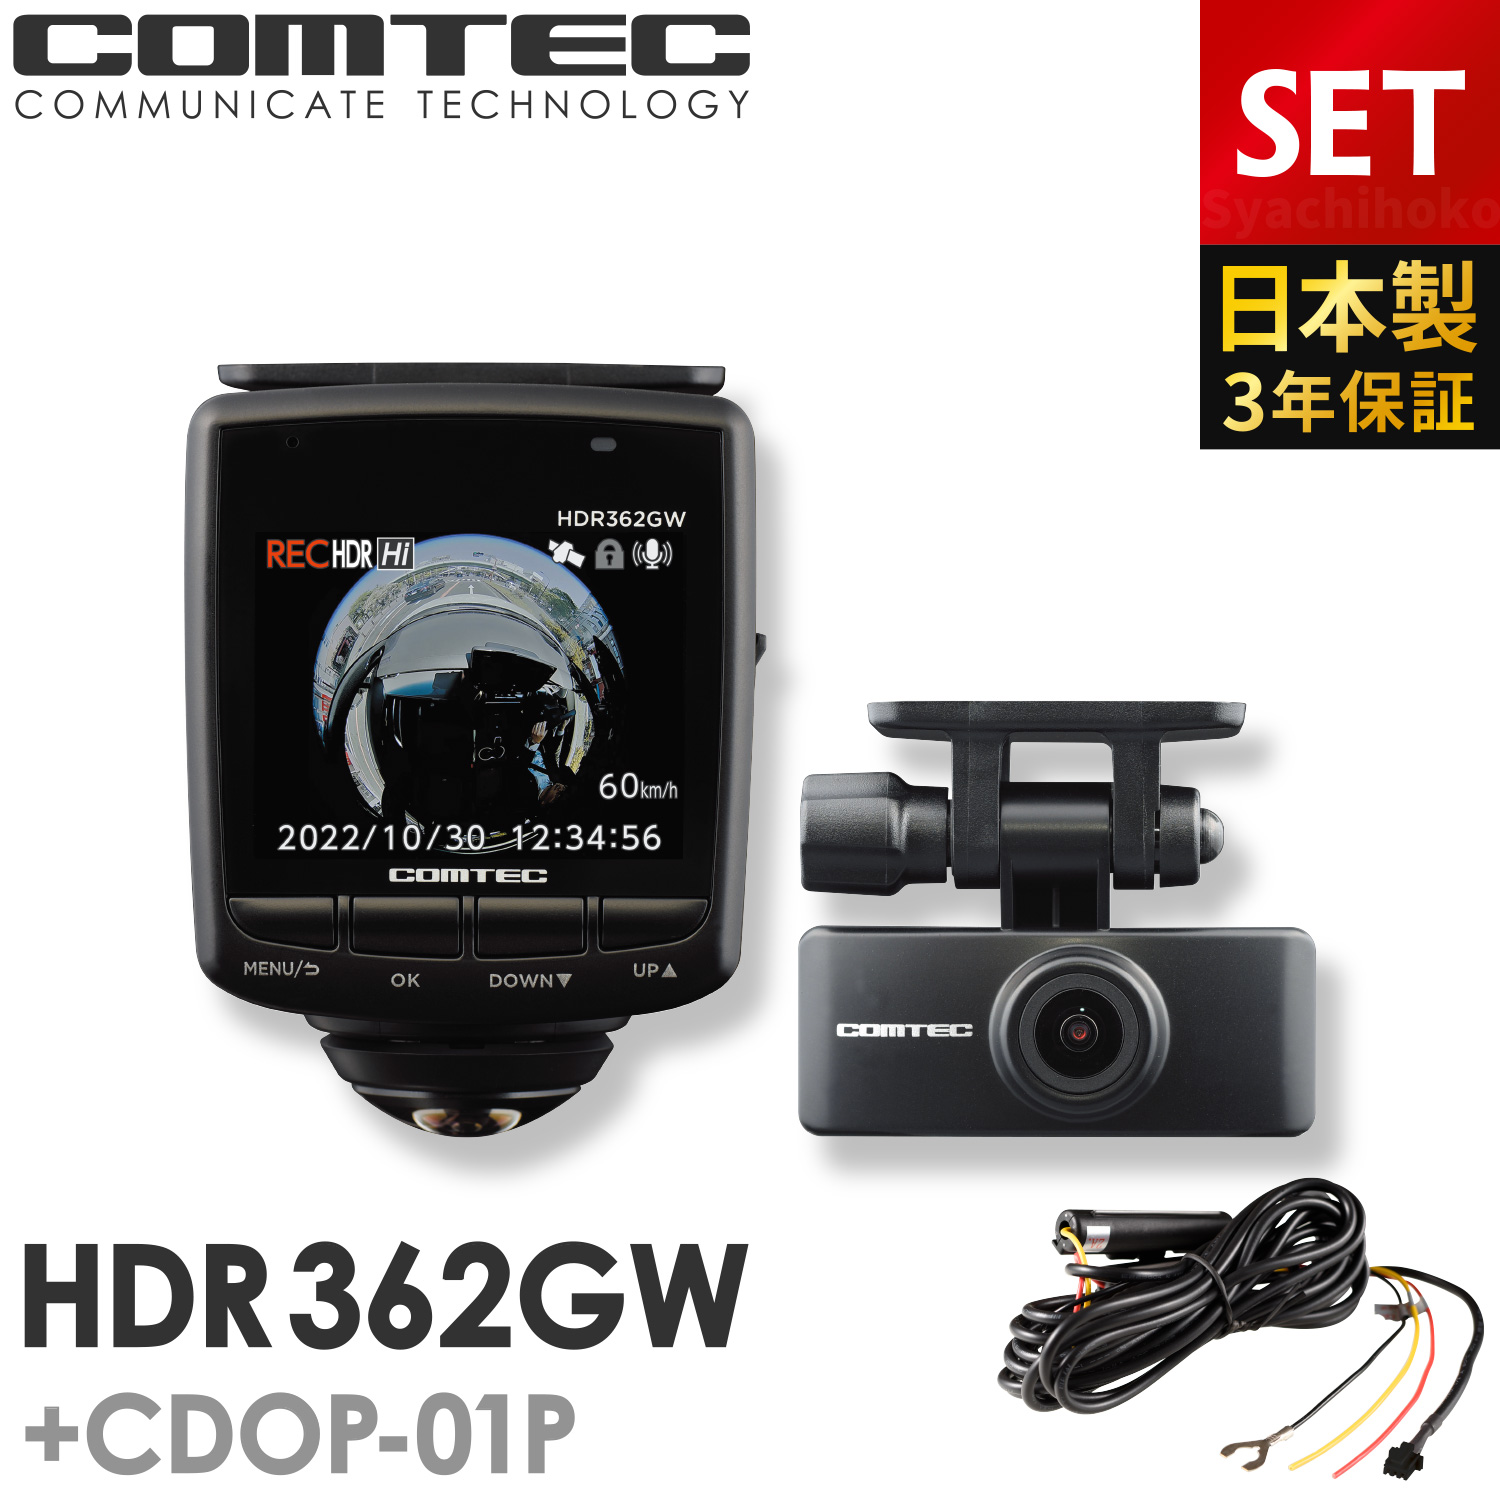 ドライブレコーダー HDR362GW CDOP-01P 駐車監視コードセット 日本製 3年保証 360度 リヤカメラ コムテック 前後左右 全方位記録 前後2カメラ ノイズ対策済 常時 衝撃録画 GPS搭載 駐車監視対応 2.4インチ液晶 ドラレコ